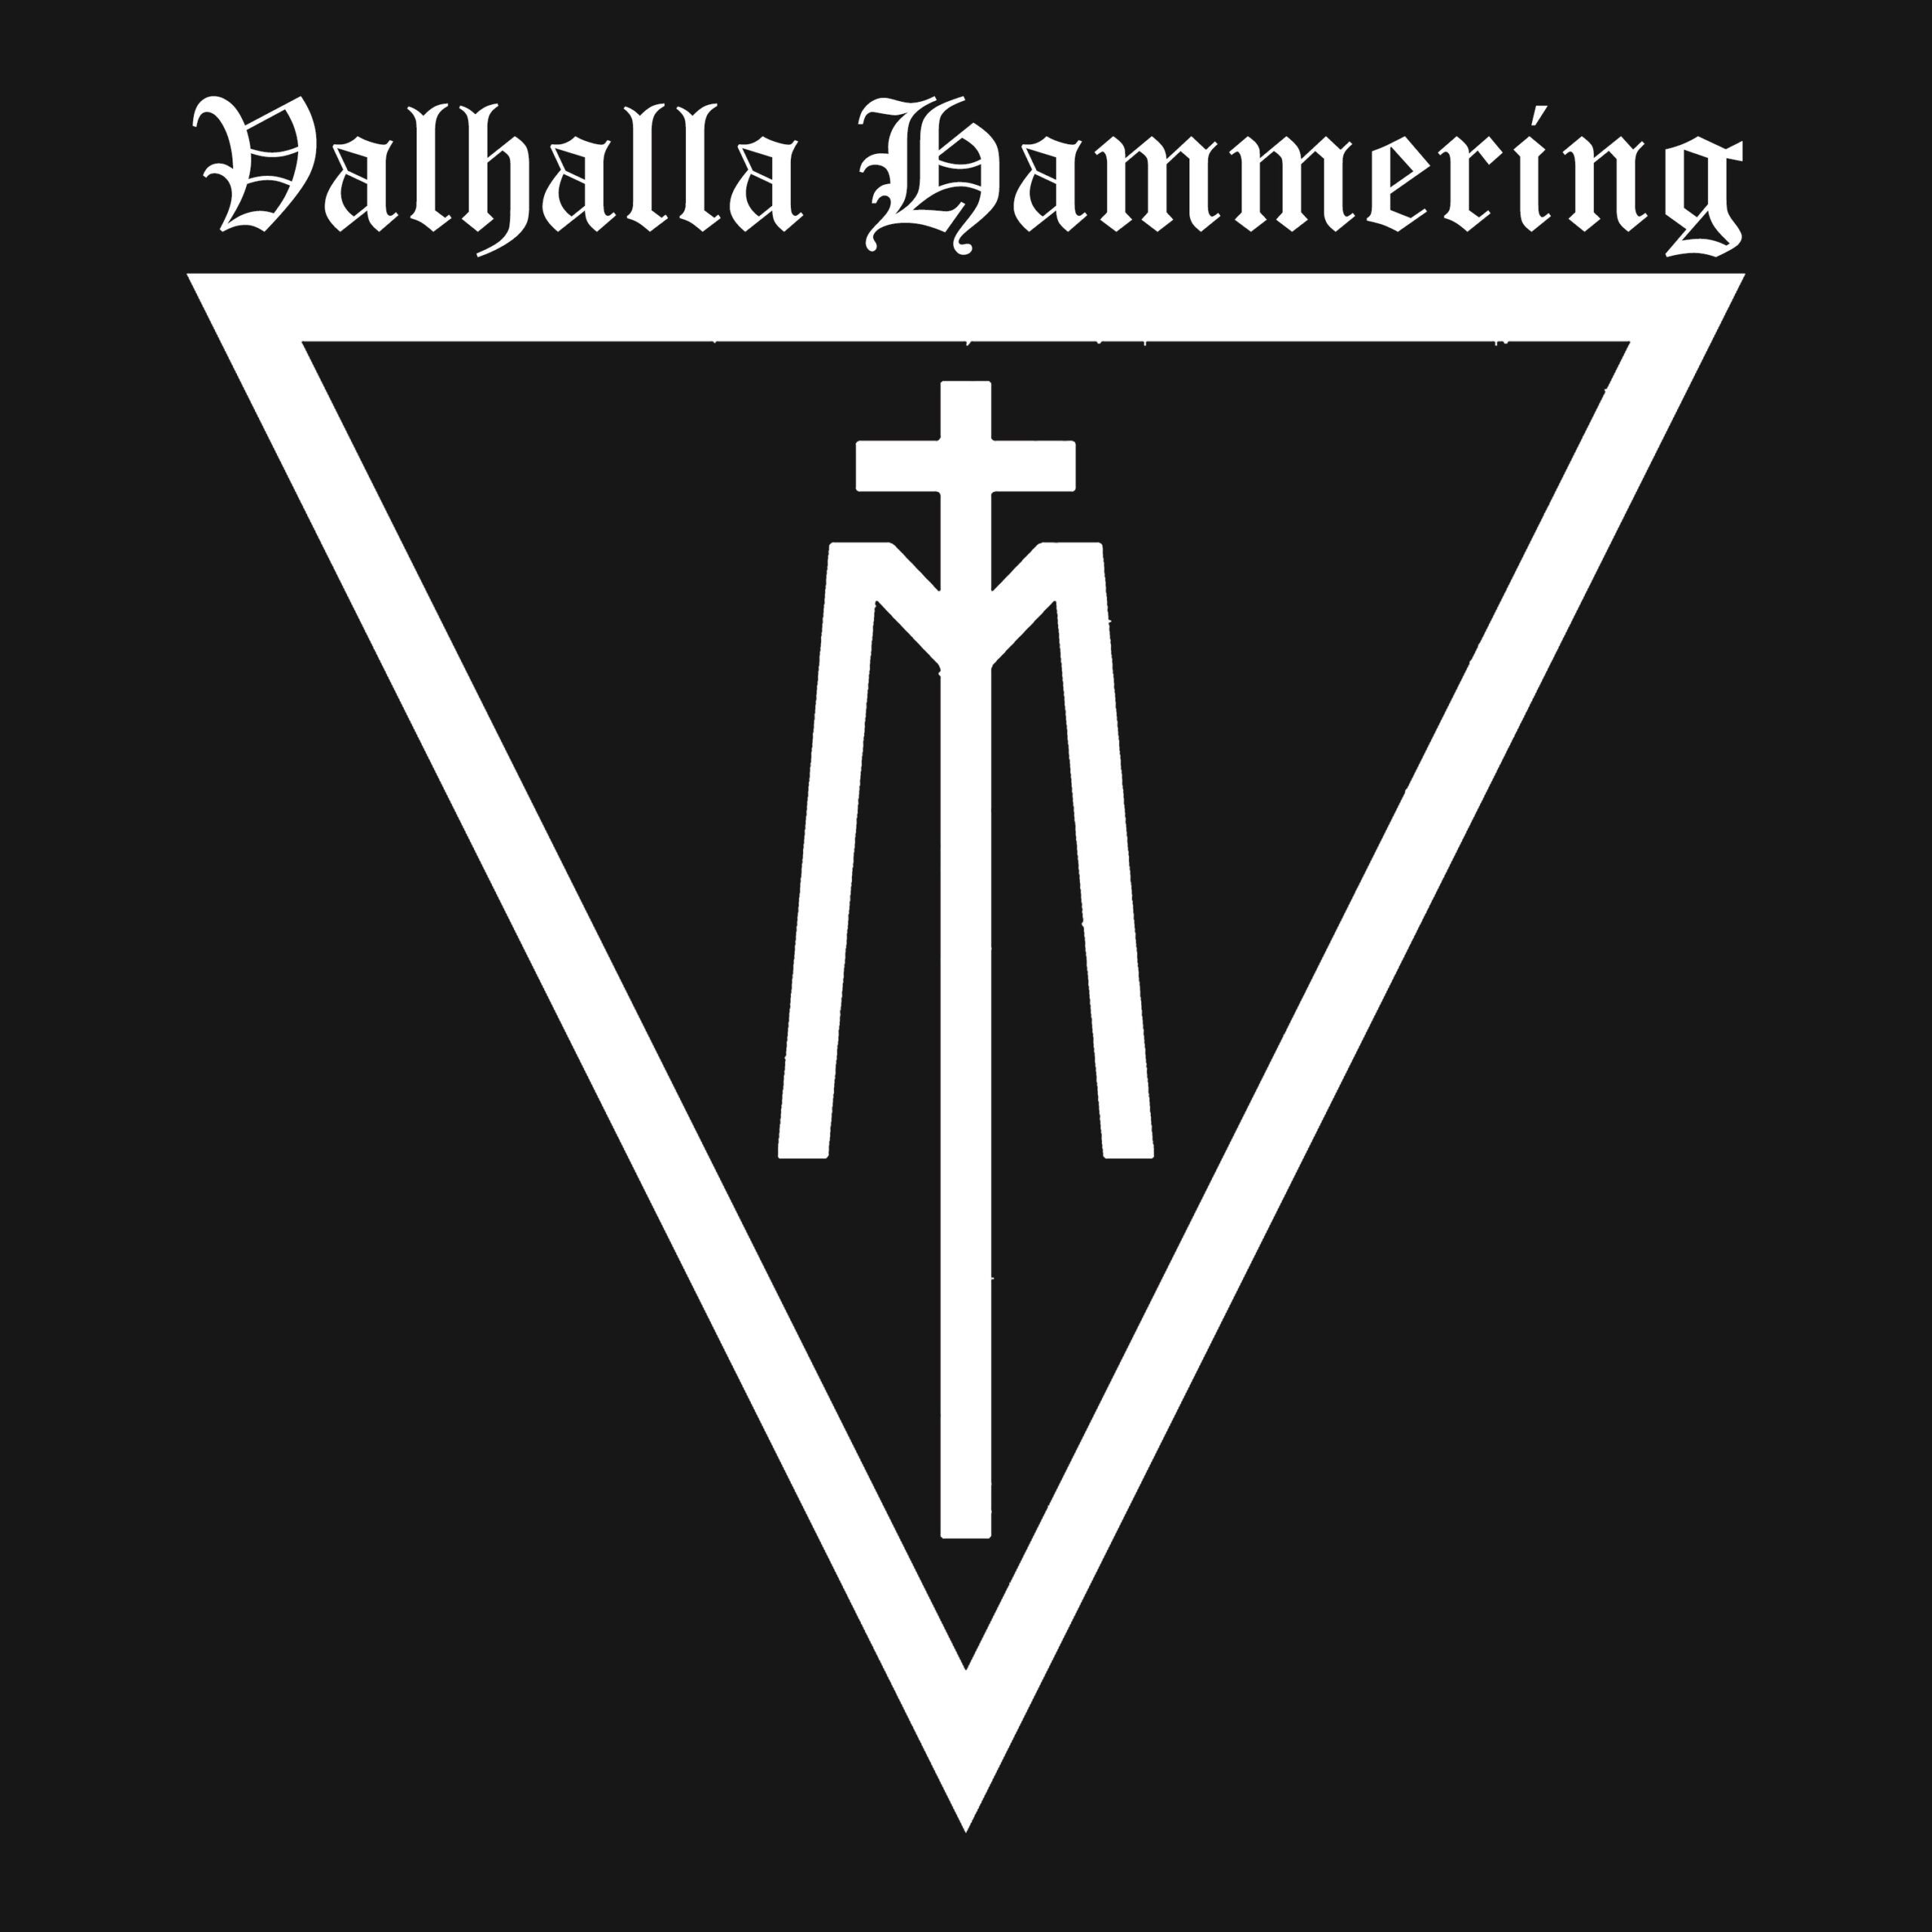 Neuer Song 'Valhalla Hammering' im Video